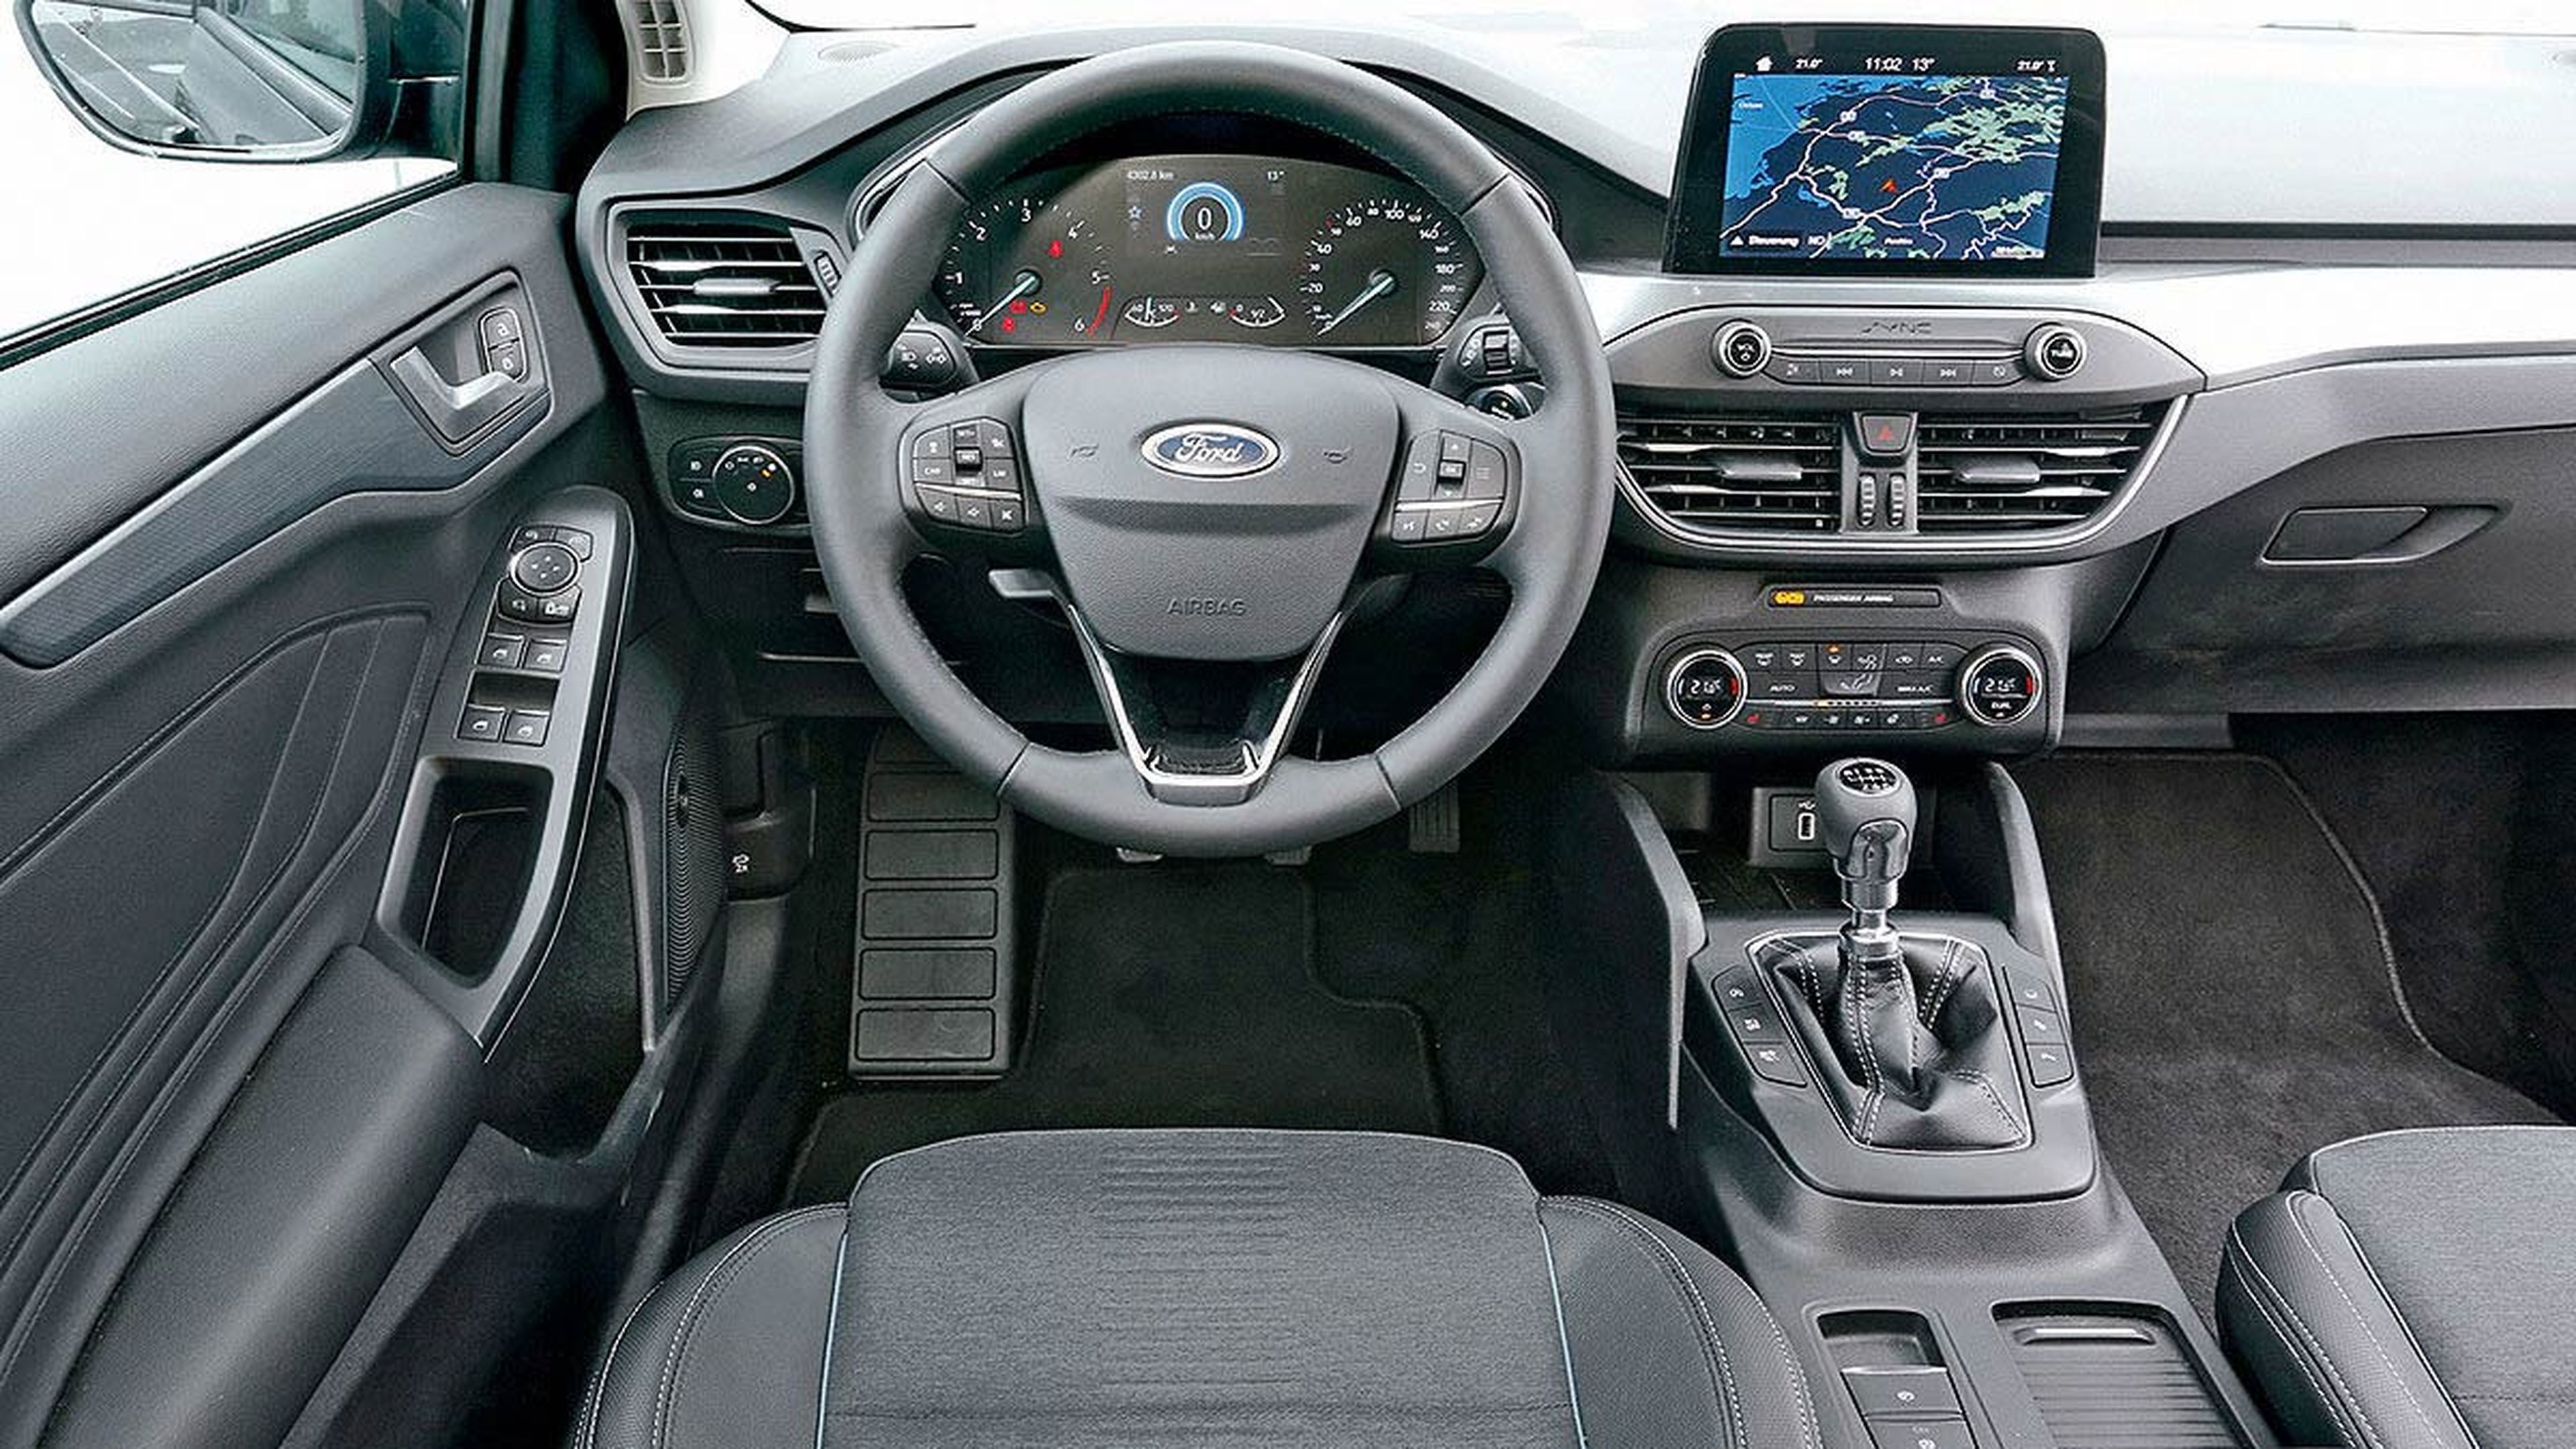 Cickpit del Ford Focus